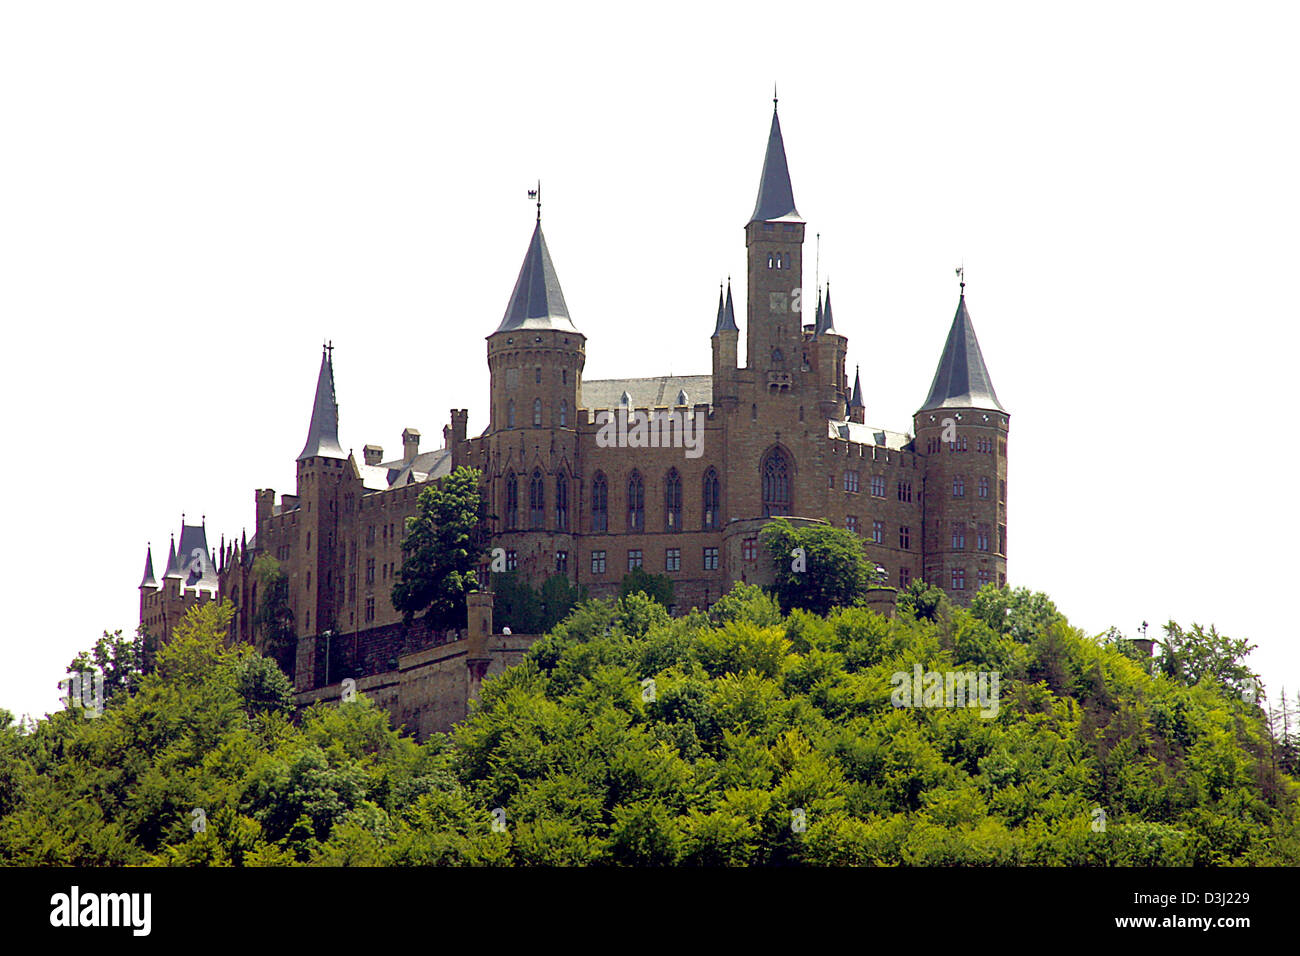 (Afp) - Le château Hohenzollern en photo le 15 juin 2005. Le château Hohenzollern est le siège ancestral de la garnison prussienne-ainsi que la ligne catholique-seigneuriale de la maison Hohenzollern. C'est une des plus belles et visité les châteaux de l'Europe. L'empereur Guillaume II déjà admiré la vue spectaculaire sur les montagnes souabes : La vue sur le château Hohenzollern trul Banque D'Images